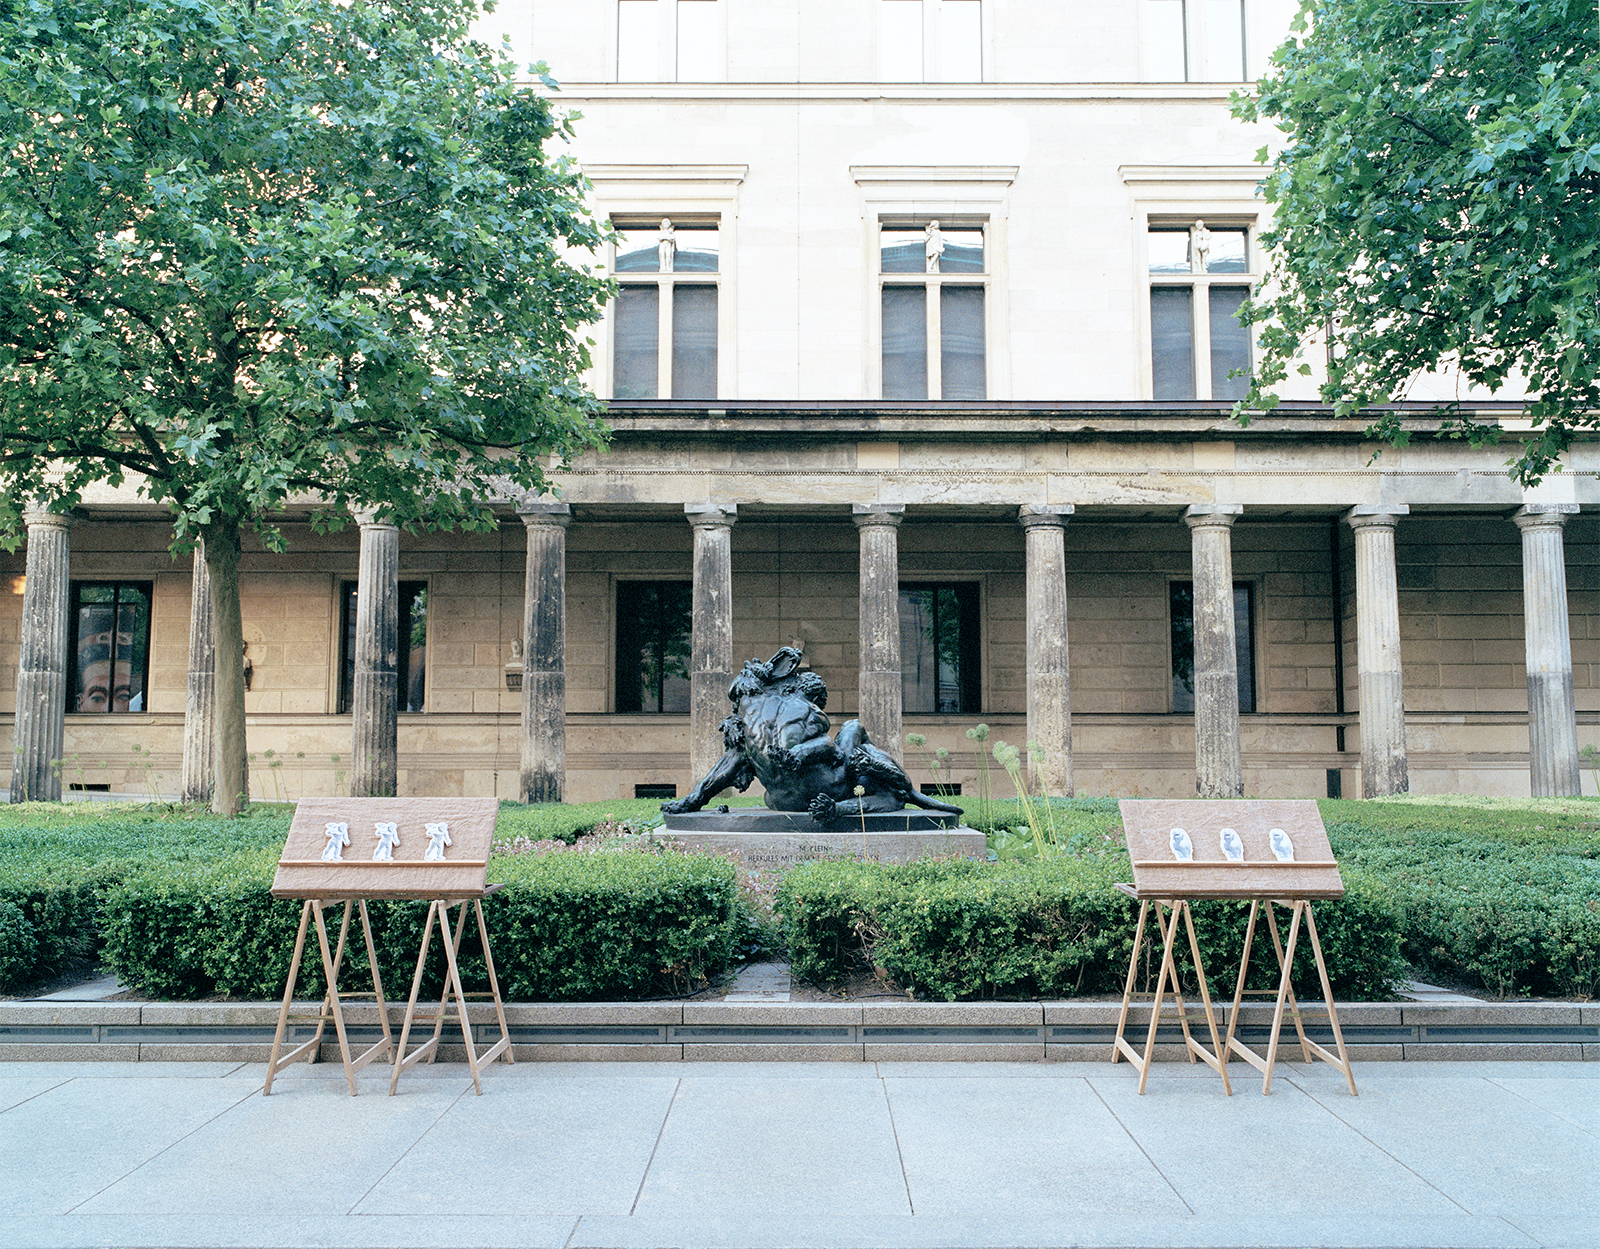 Hiro Hirakawa, installation view in front of the Neues Museum, Berlin, Germany, Jun. 2021, 平川ヒロ